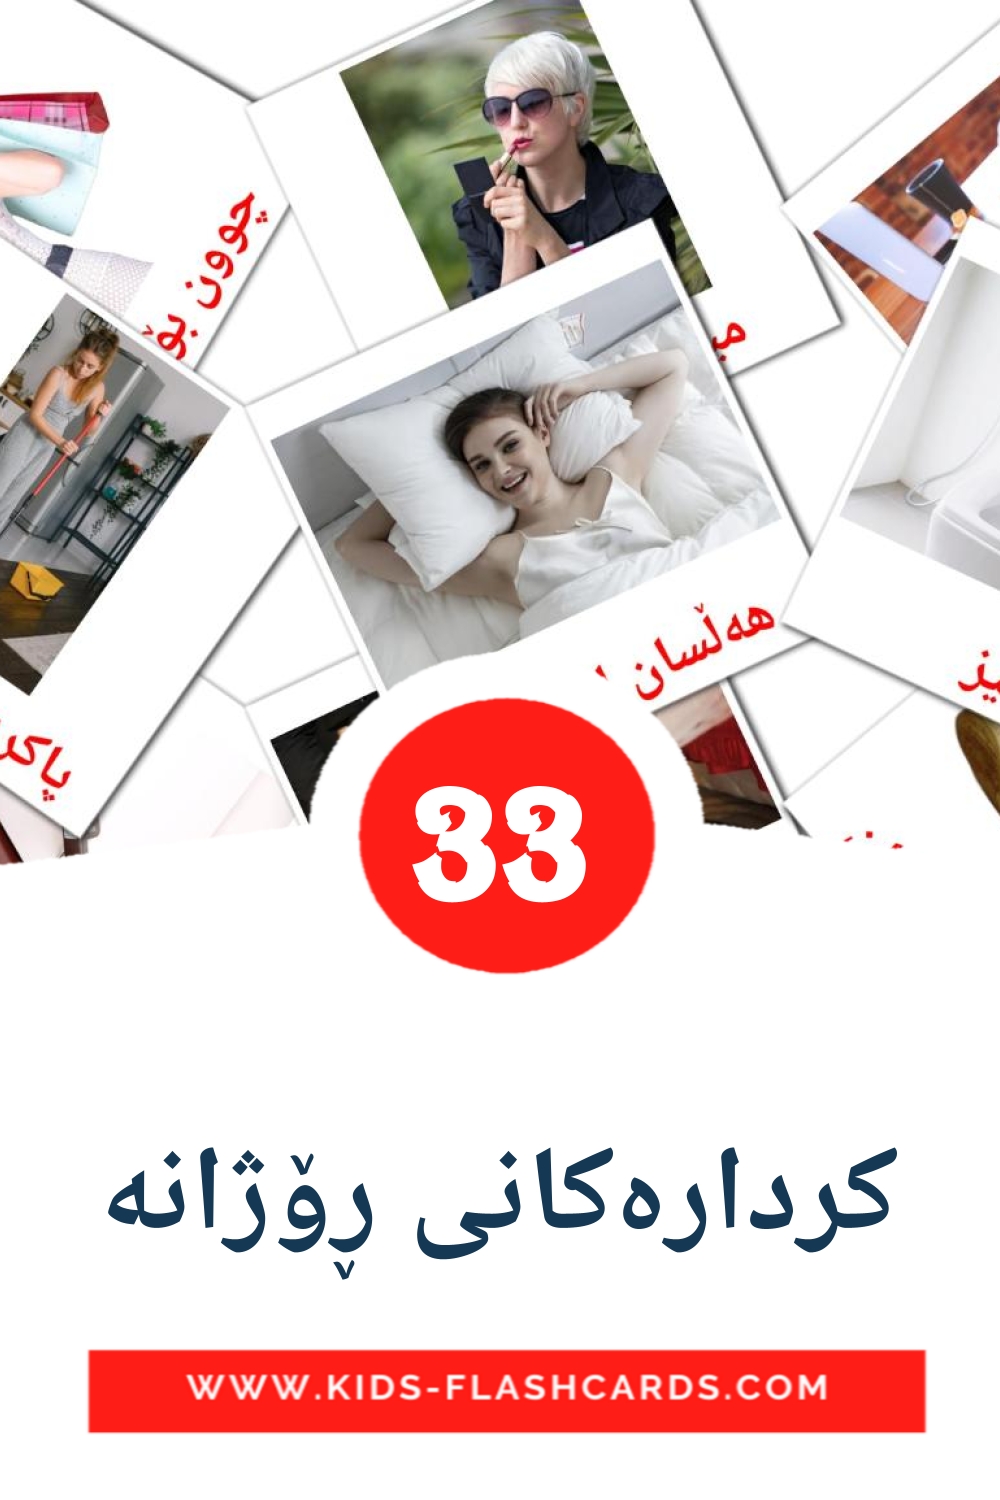 33 carte illustrate di کردارەکانی ڕۆژانە per la scuola materna in kurdish(sorani)